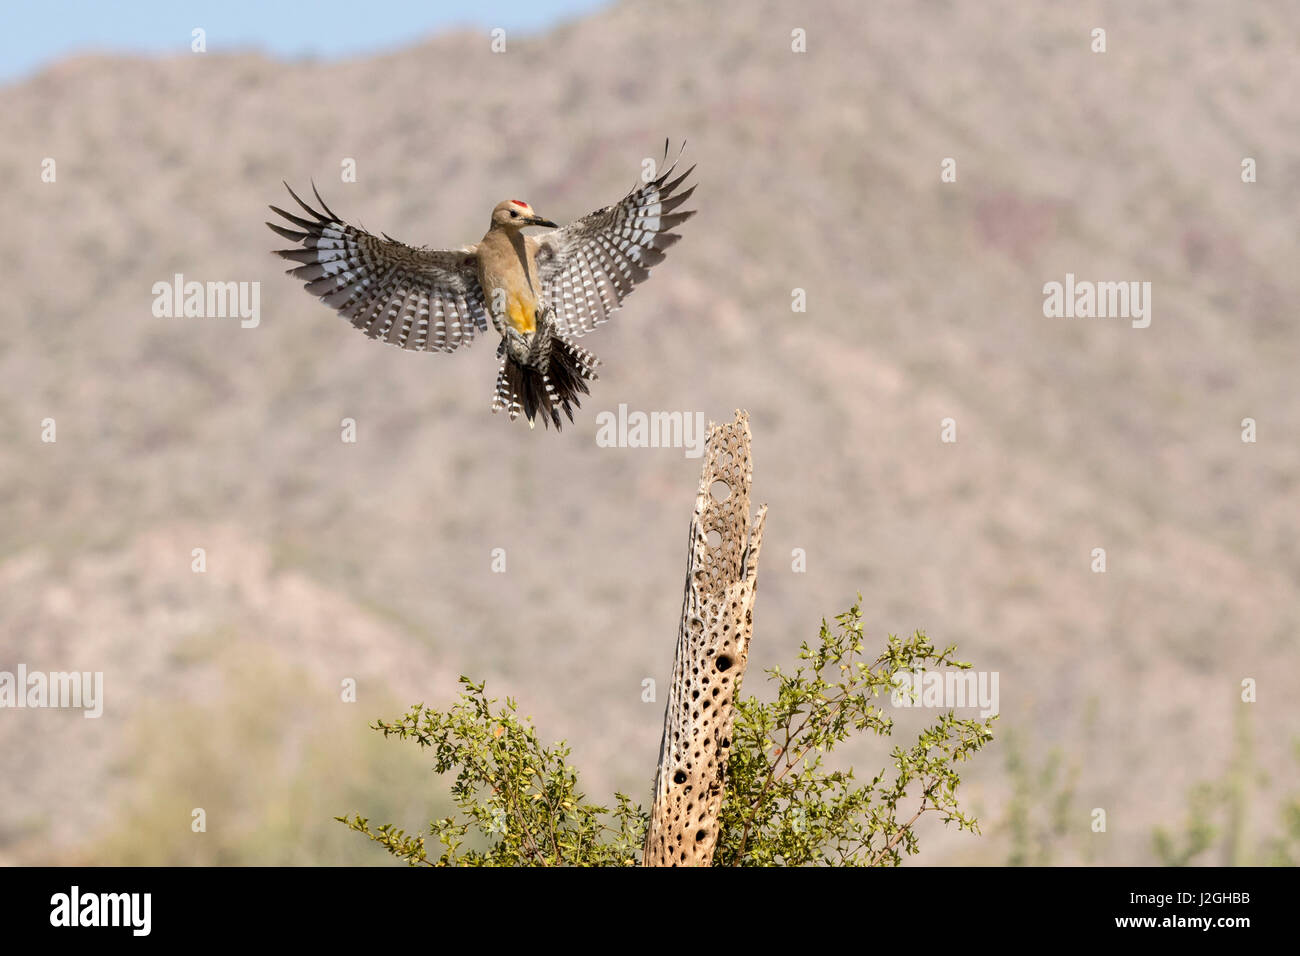 USA, Arizona, Buckeye. Male gila woodpecker landing on cholla skeleton. Credit as: Wendy Kaveney / Jaynes Gallery / DanitaDelimont.com Stock Photo